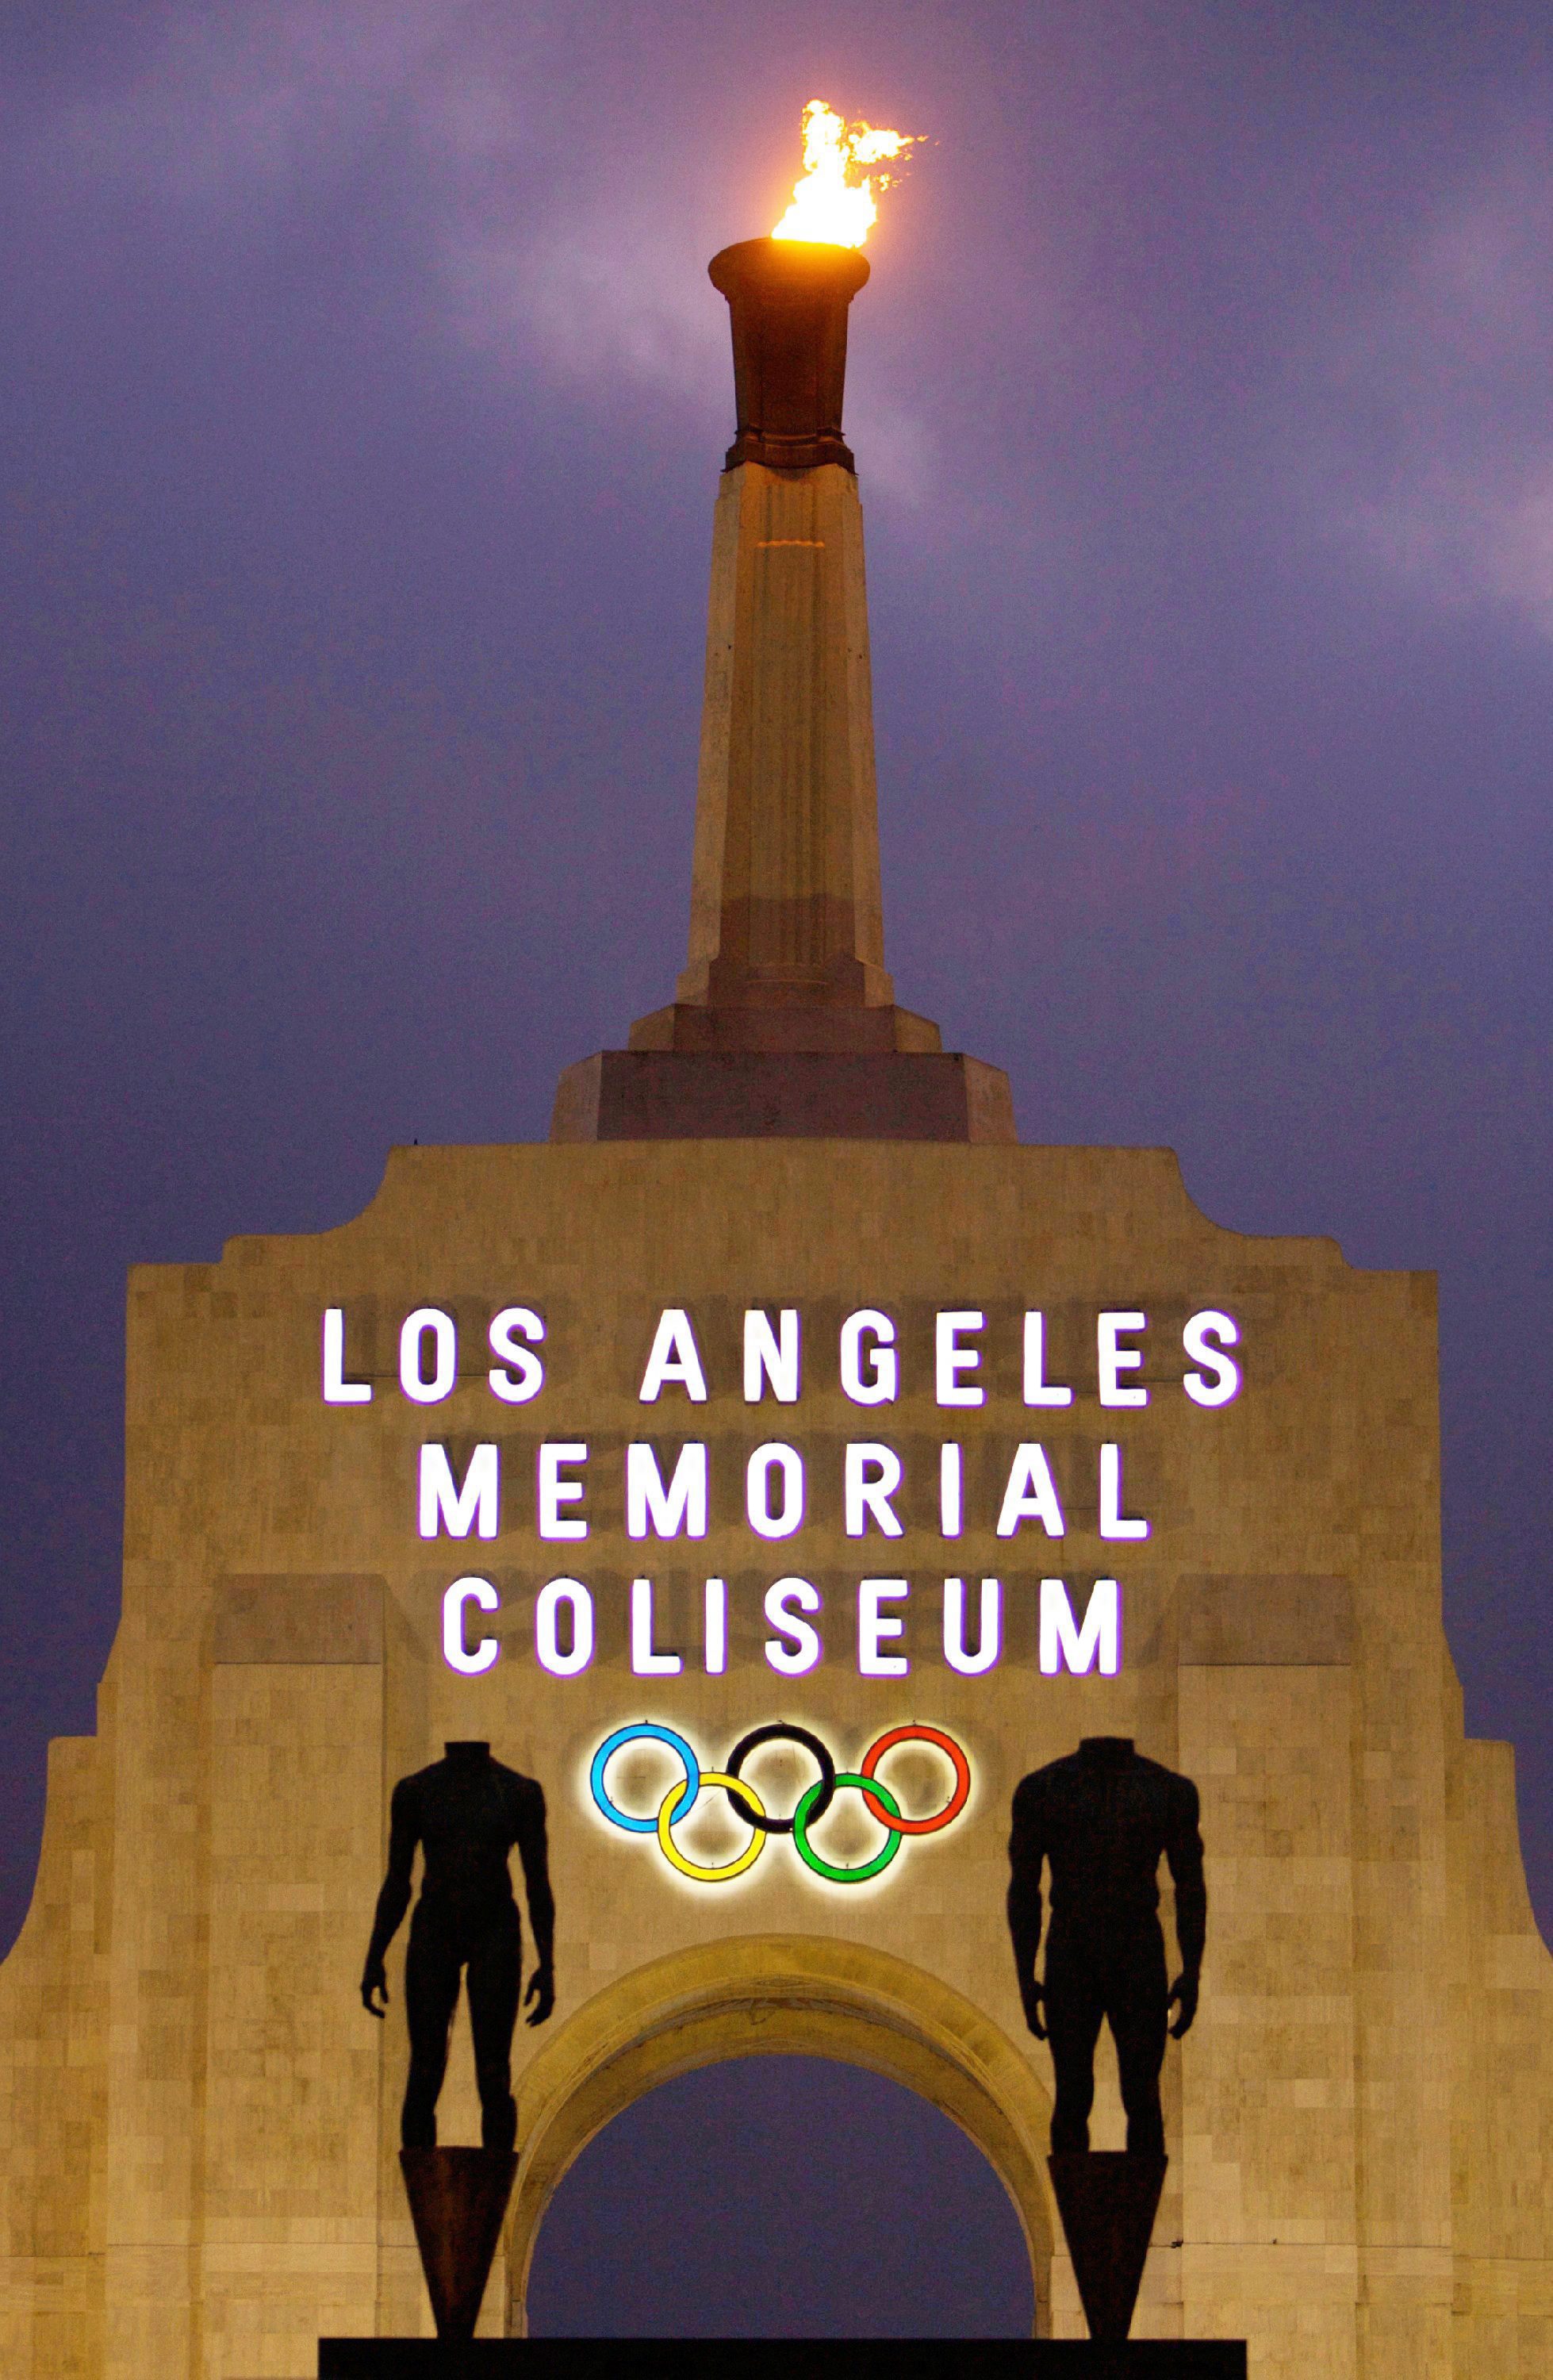 Los Angeles Memorial Coliseum in Los Angeles